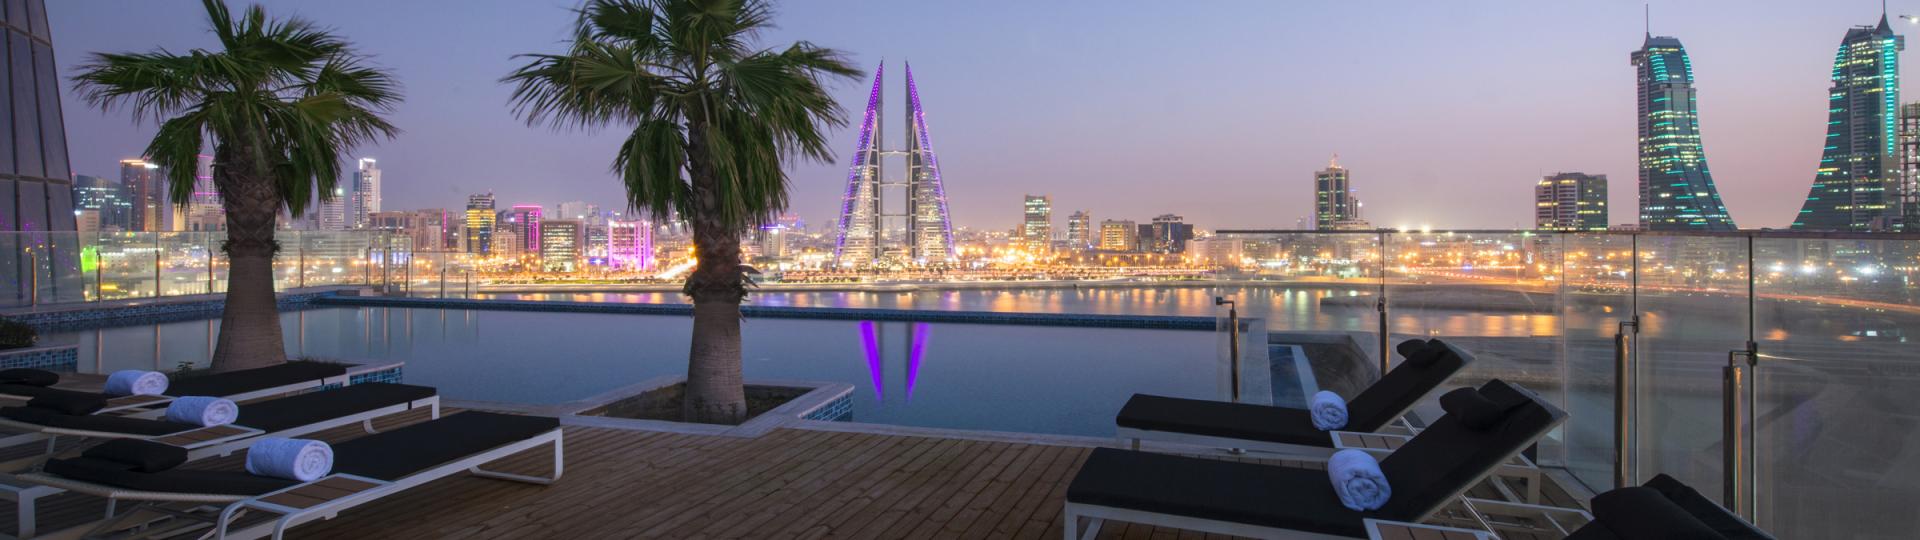 Gateway Gulf Investment Forum 2020 | Bahrain